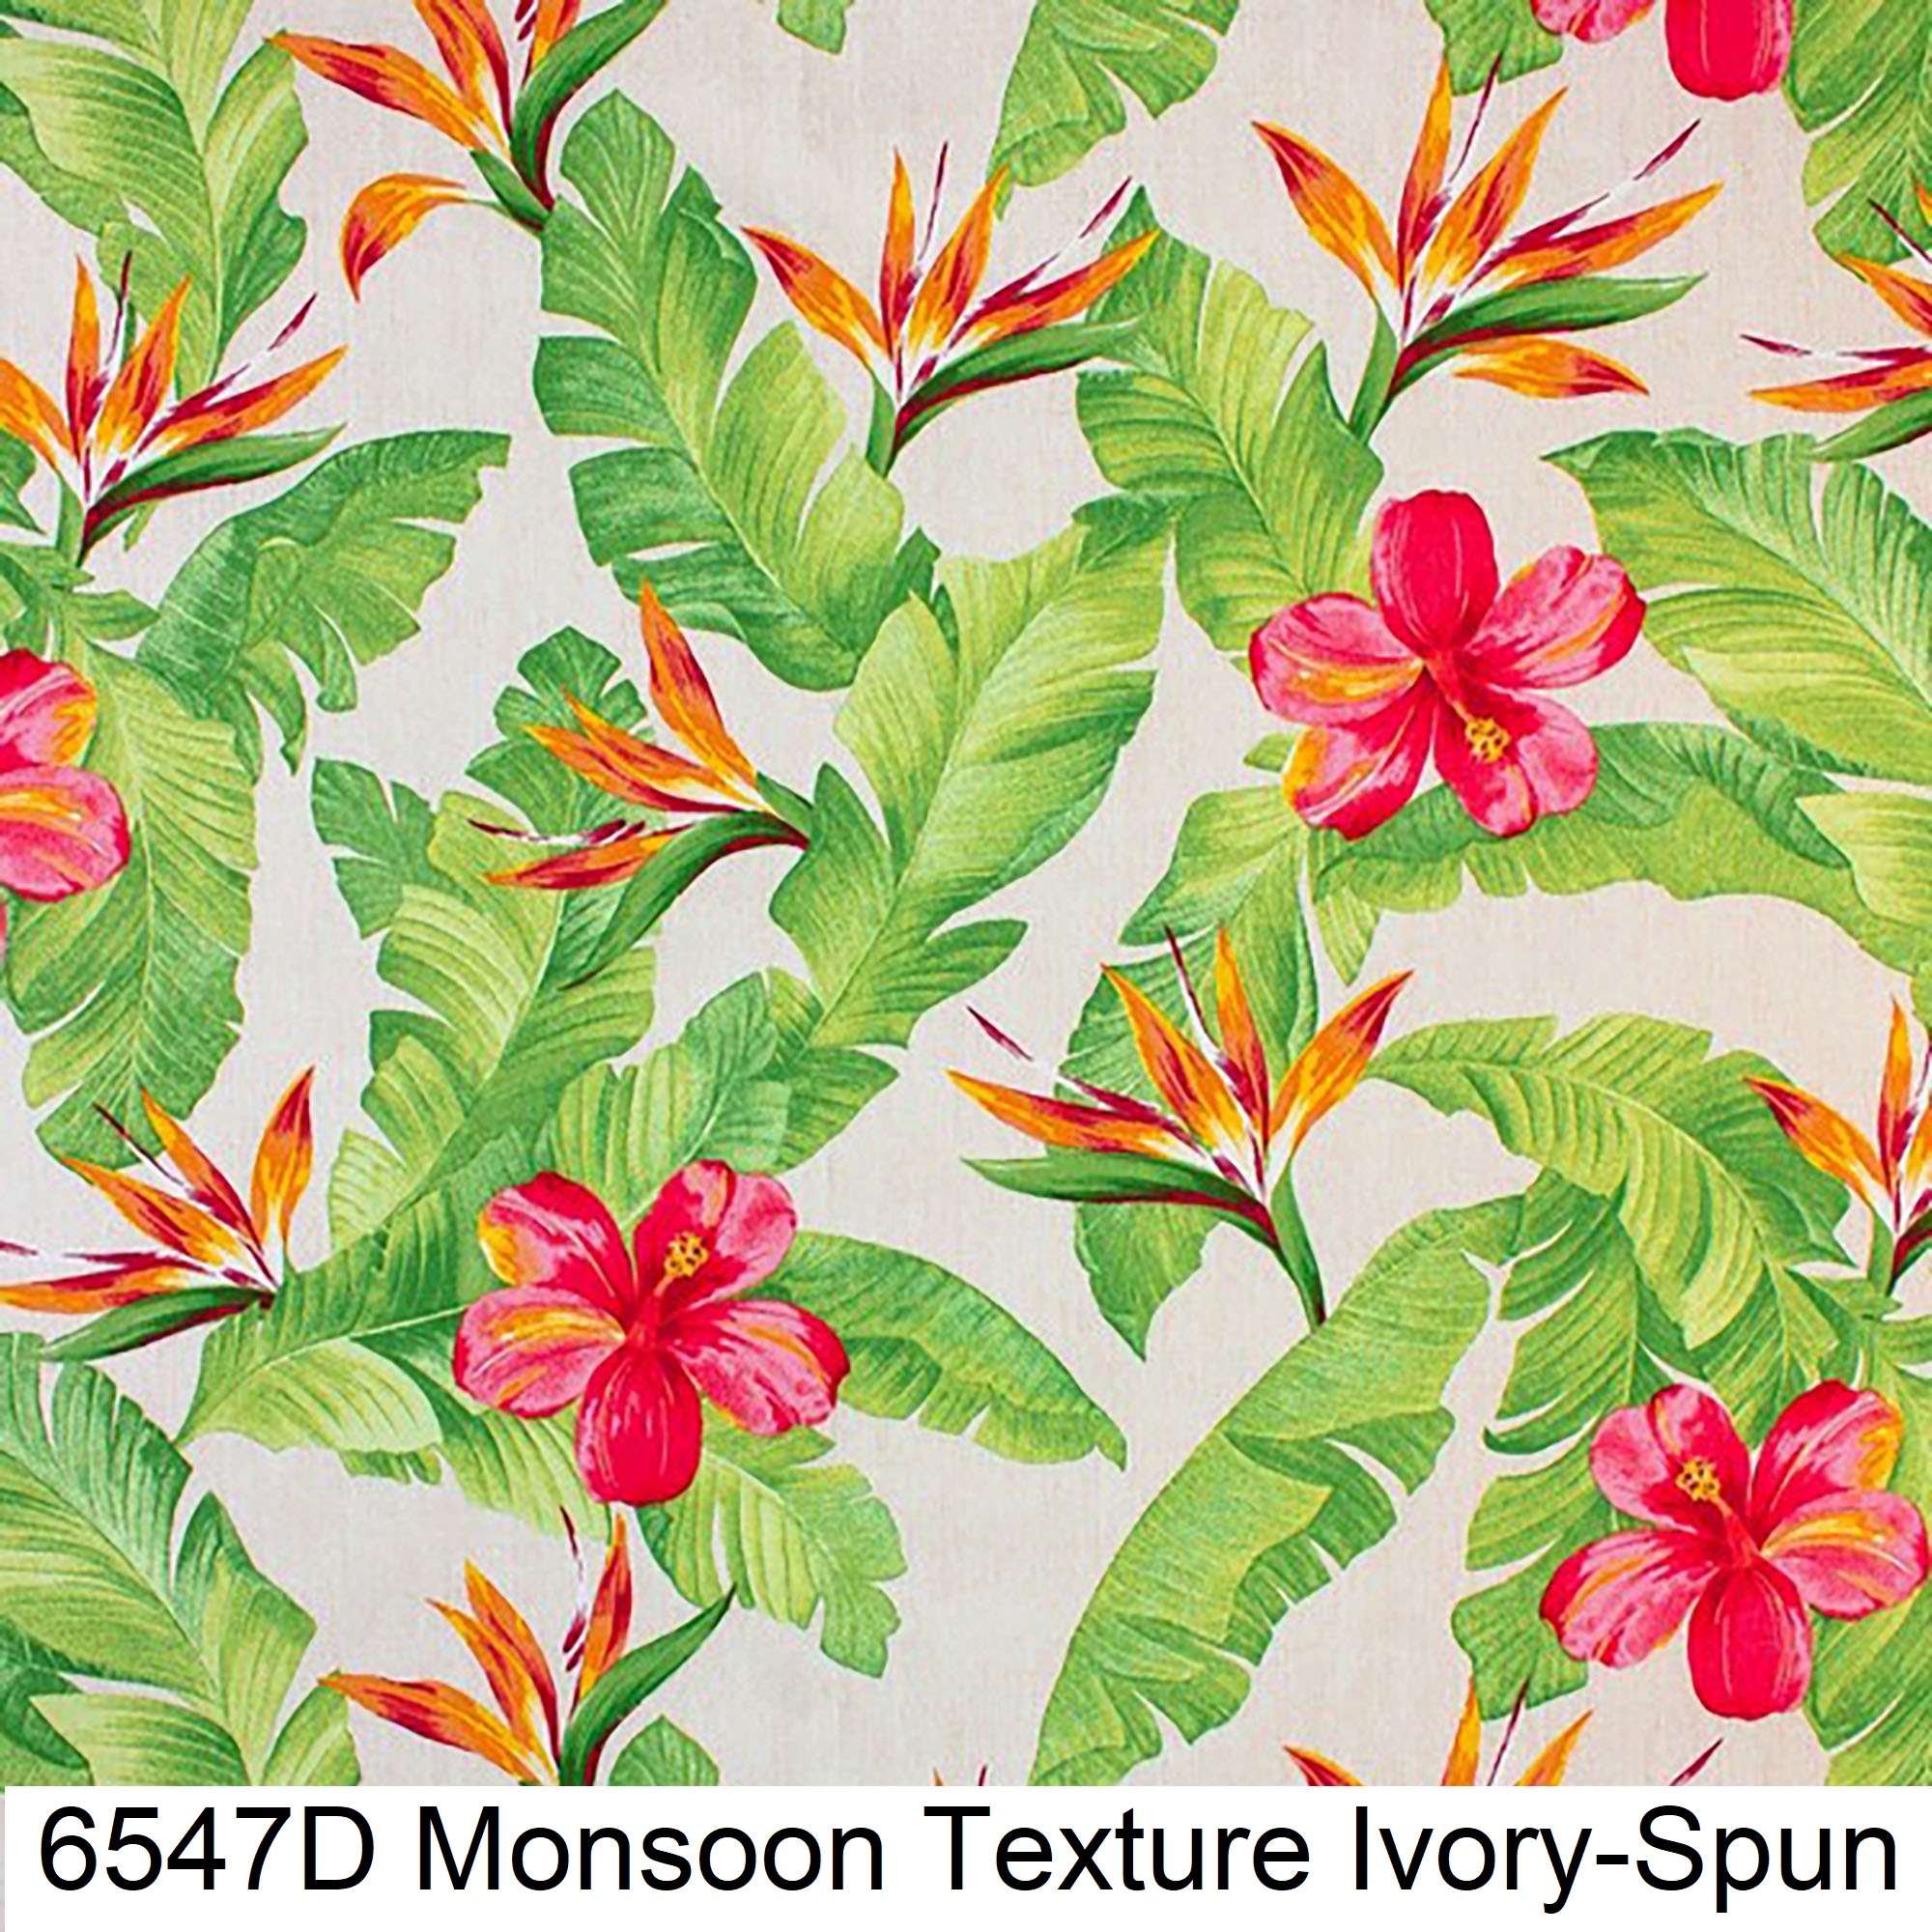 6547D Monsoon Texture Ivory-Spun